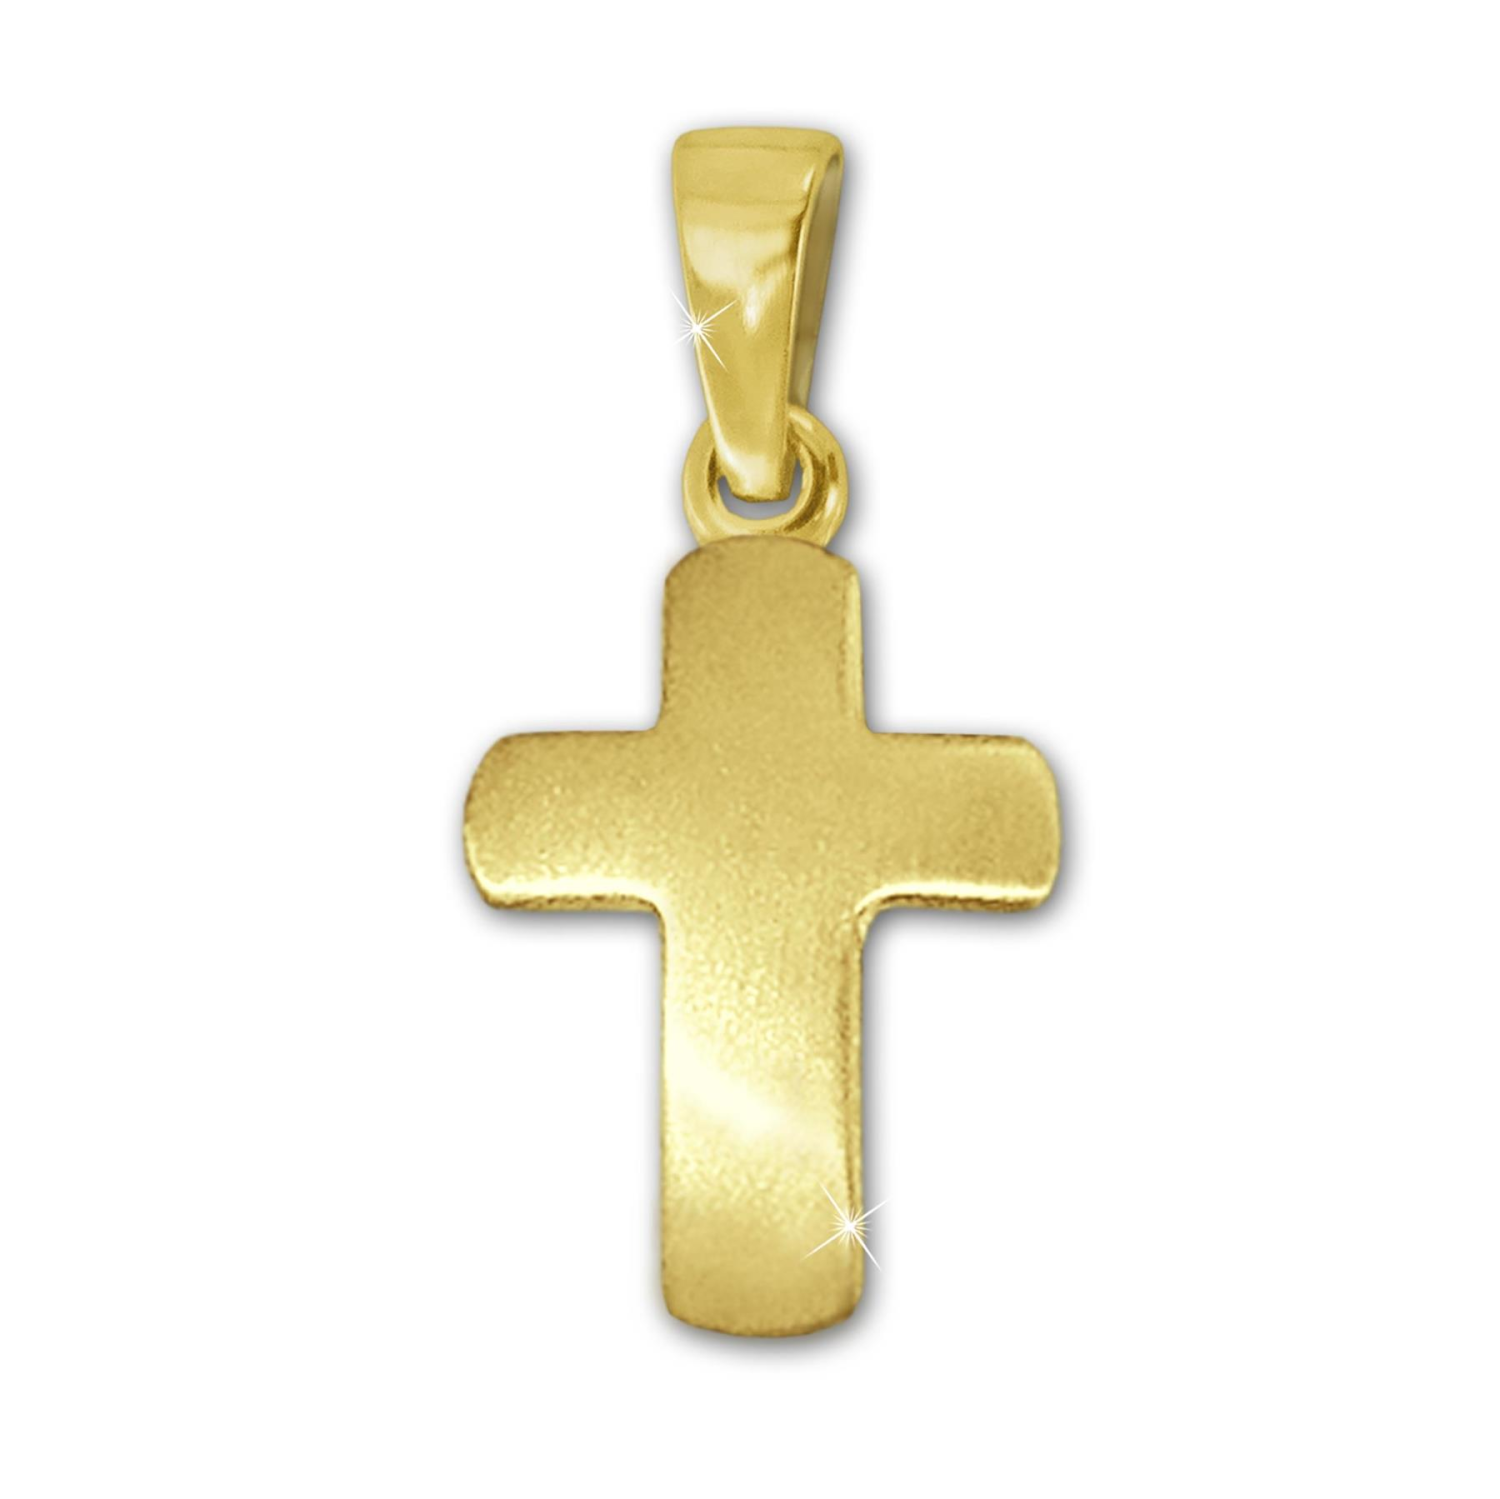 Goldene schlichtes Kreuz 12 mm seidenmatt leicht gewölbt 333 GOLD 8 KARAT